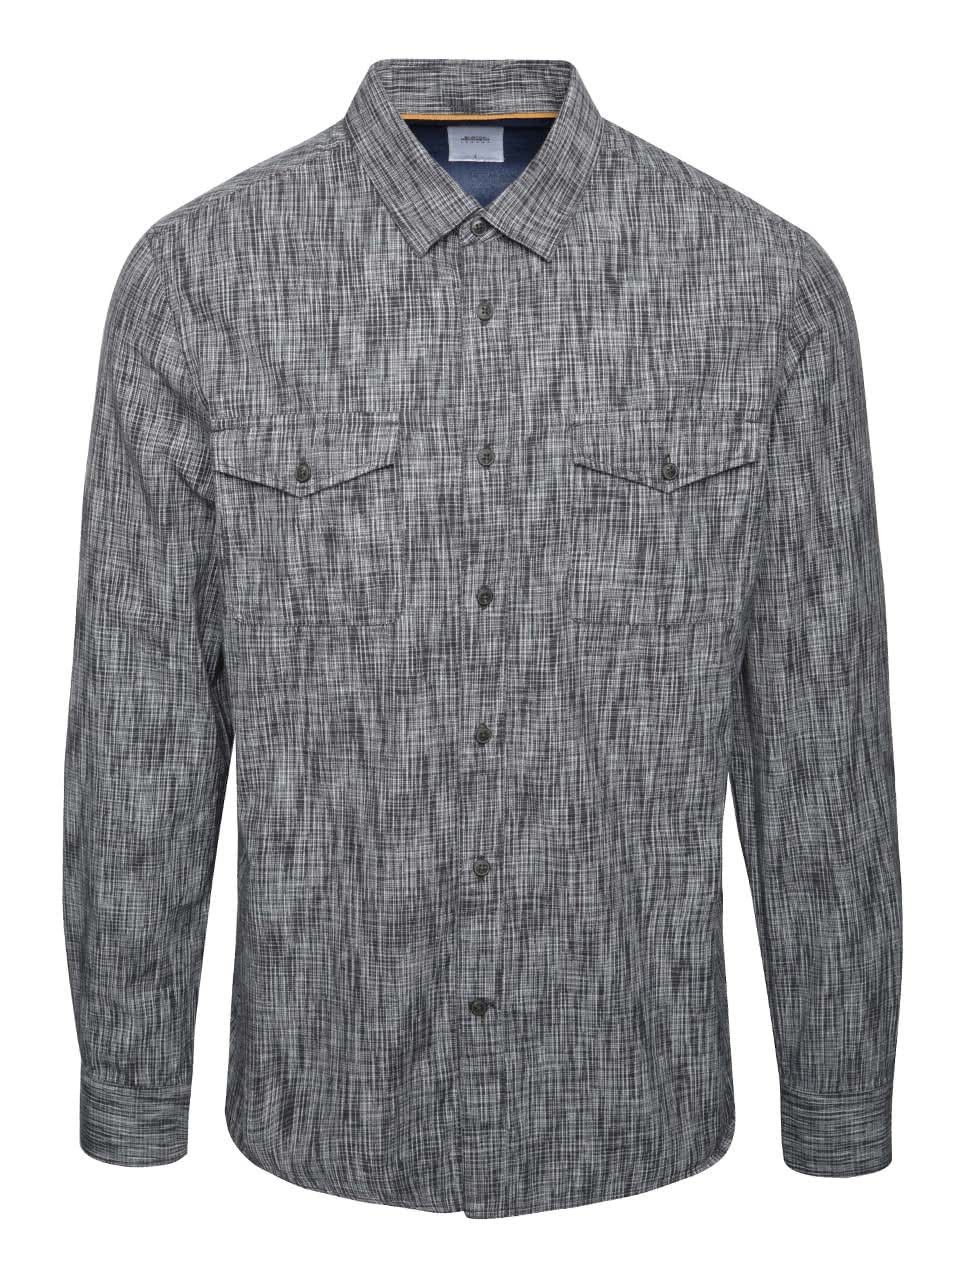 Černo-šedá žíhaná košile Burton Menswear London